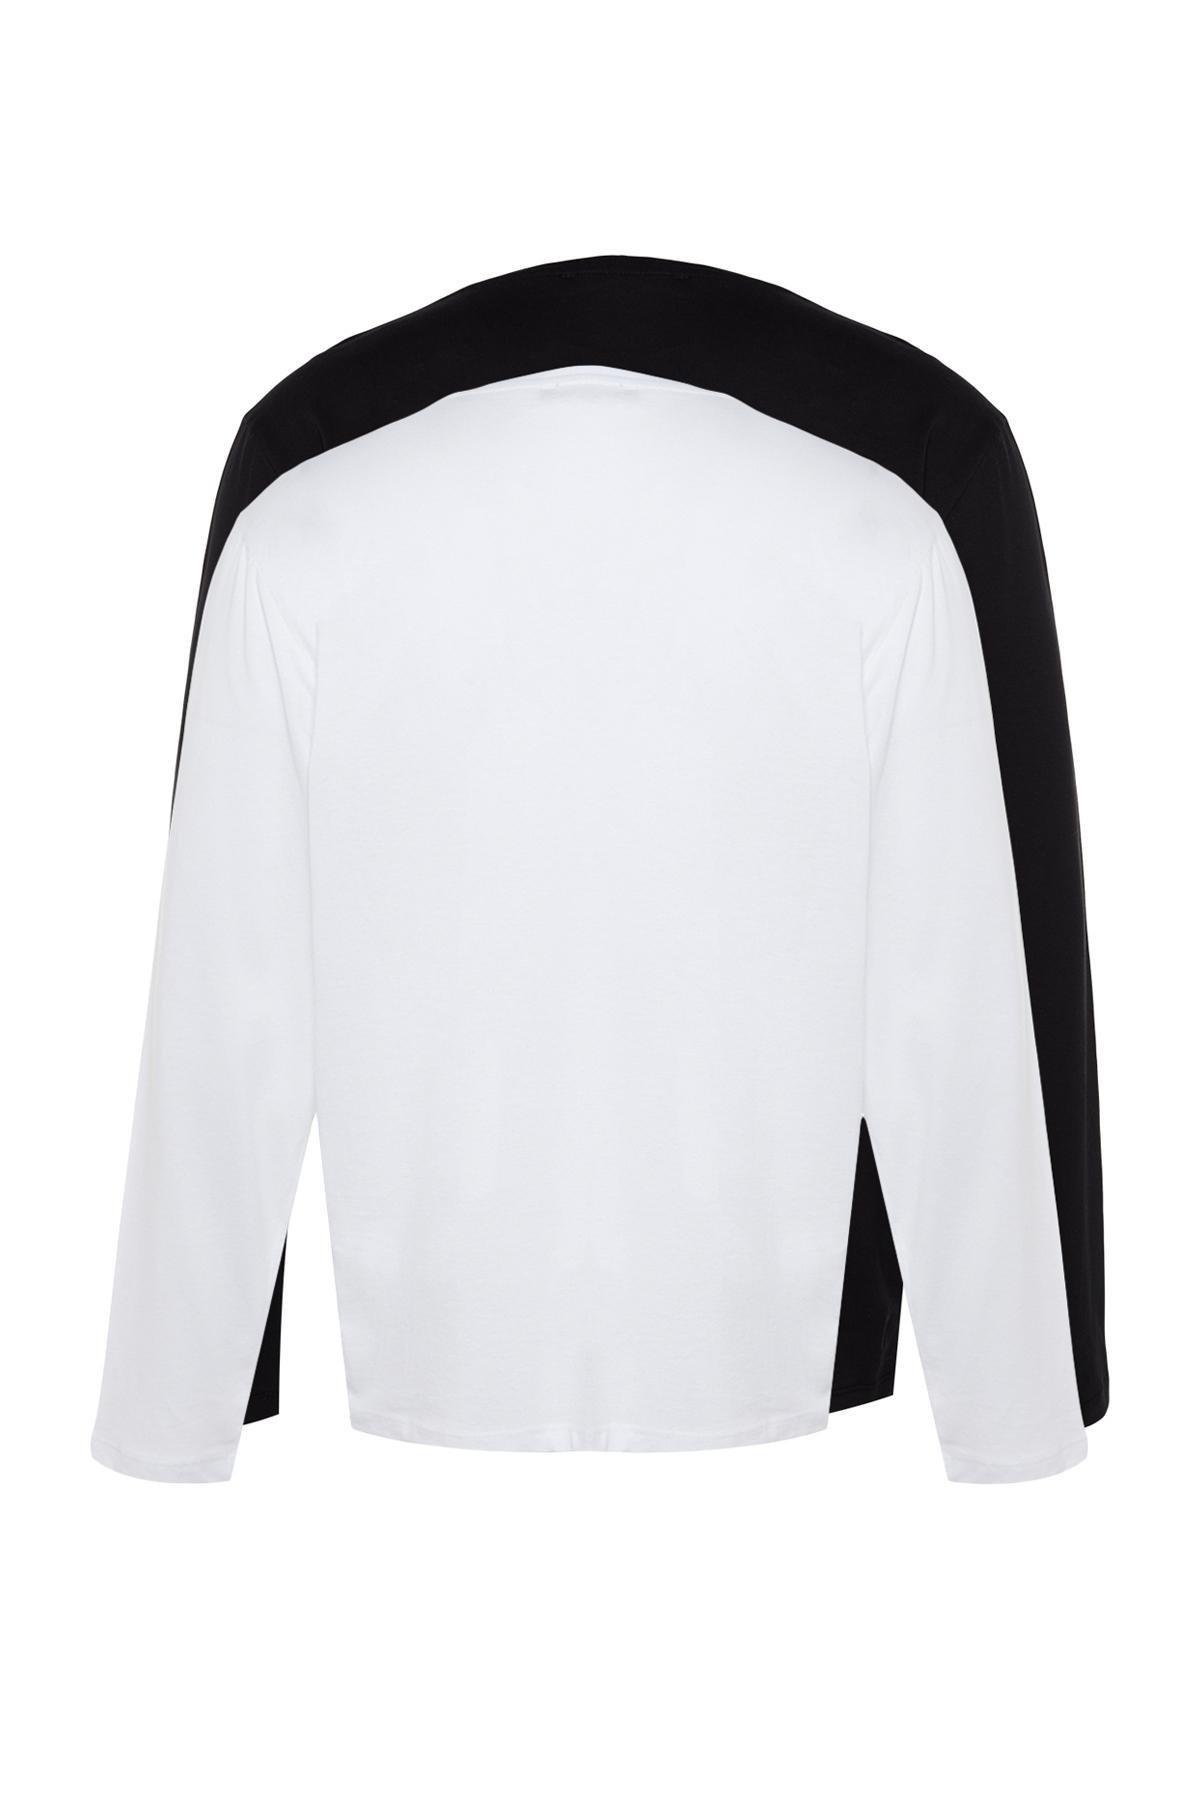 Trendyol - Multicolour Plus Size Cotton T-Shirt, Set Of 2